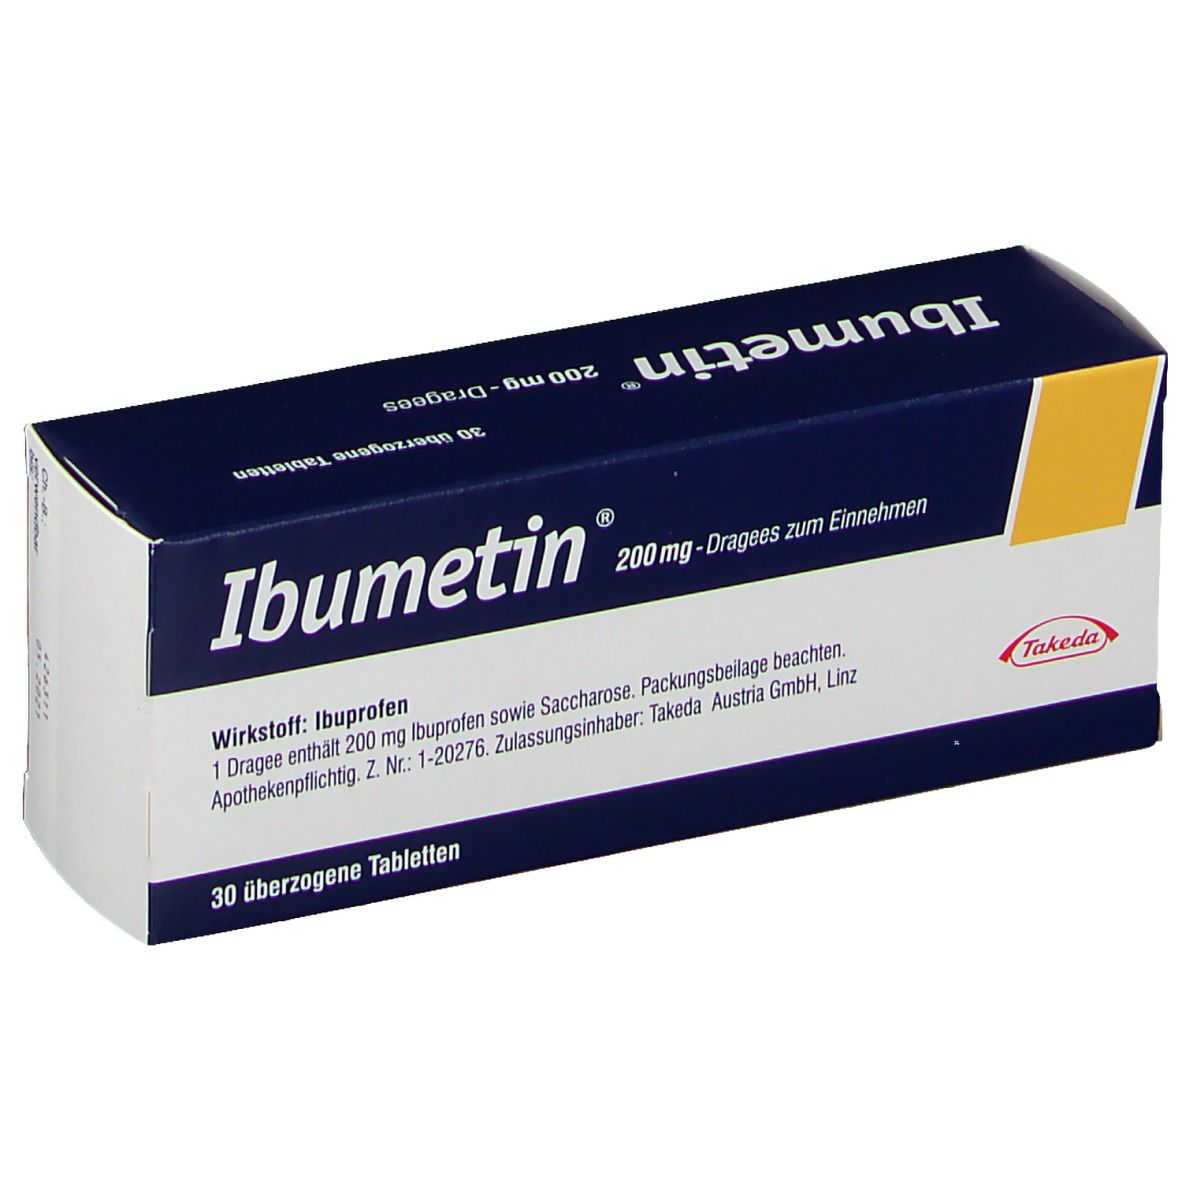 Ibumetin® 200 mg